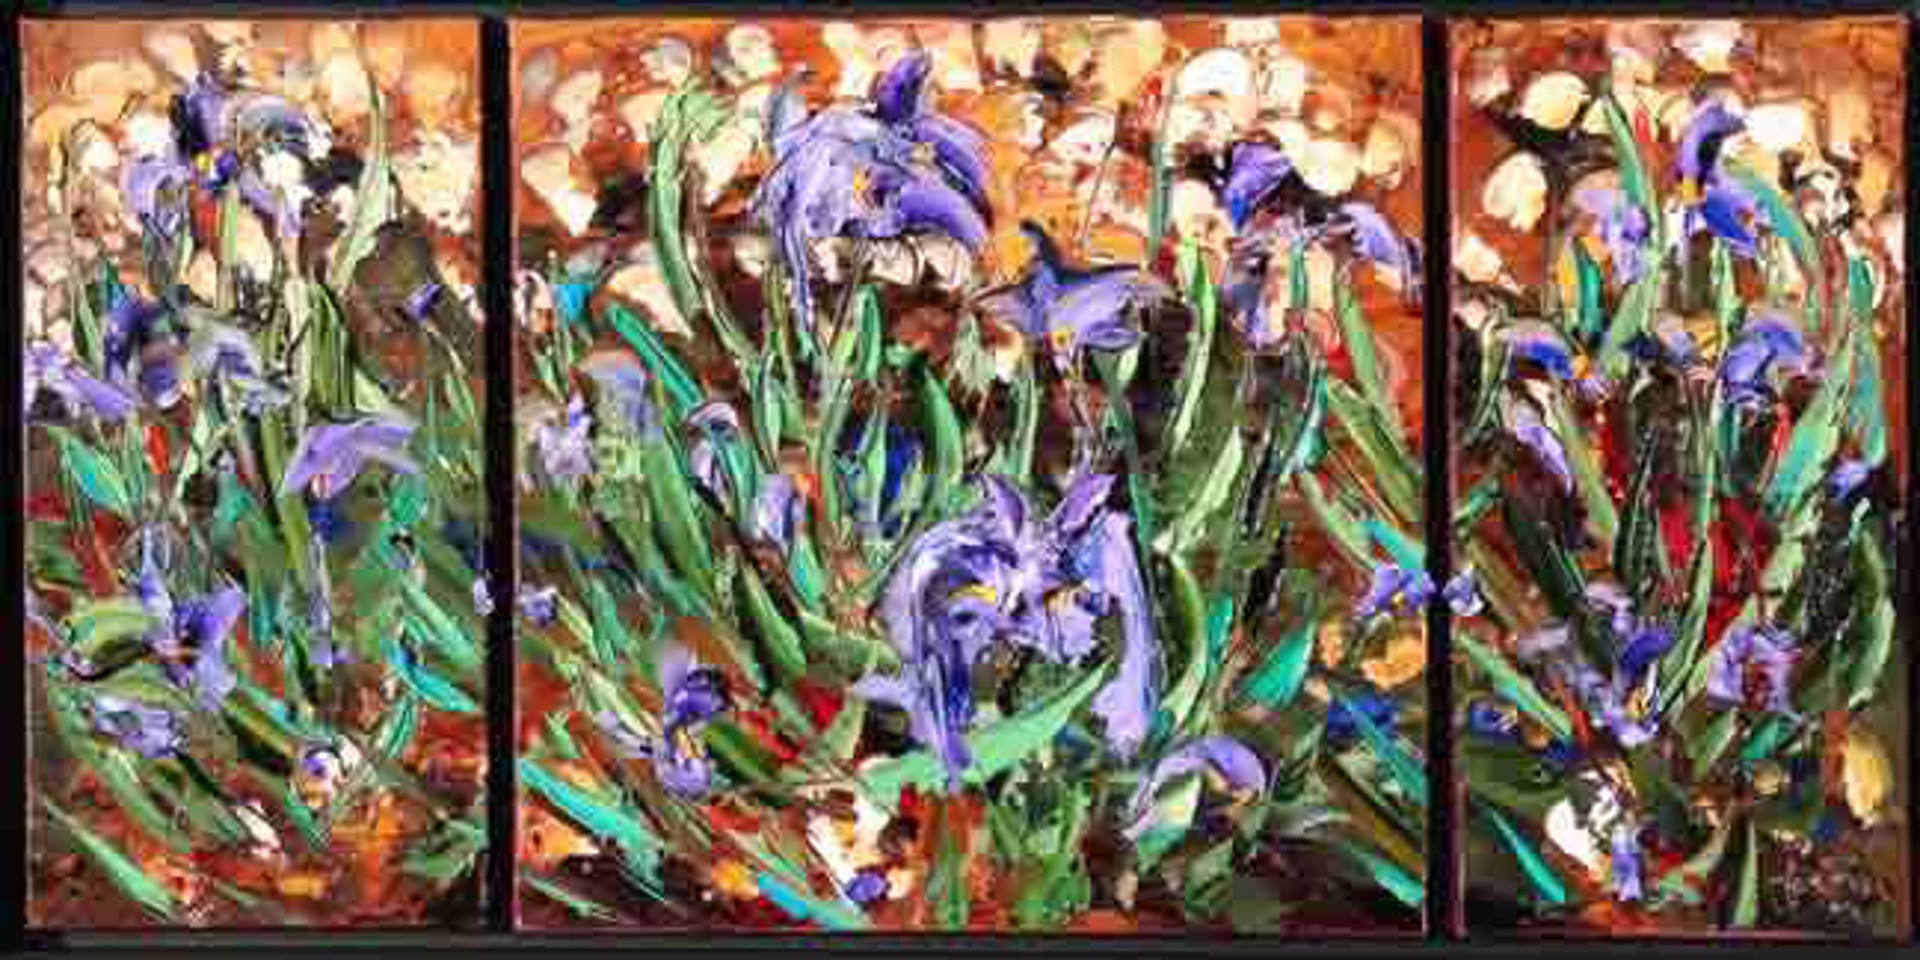 Iris Evolution Triptych by JD Miller